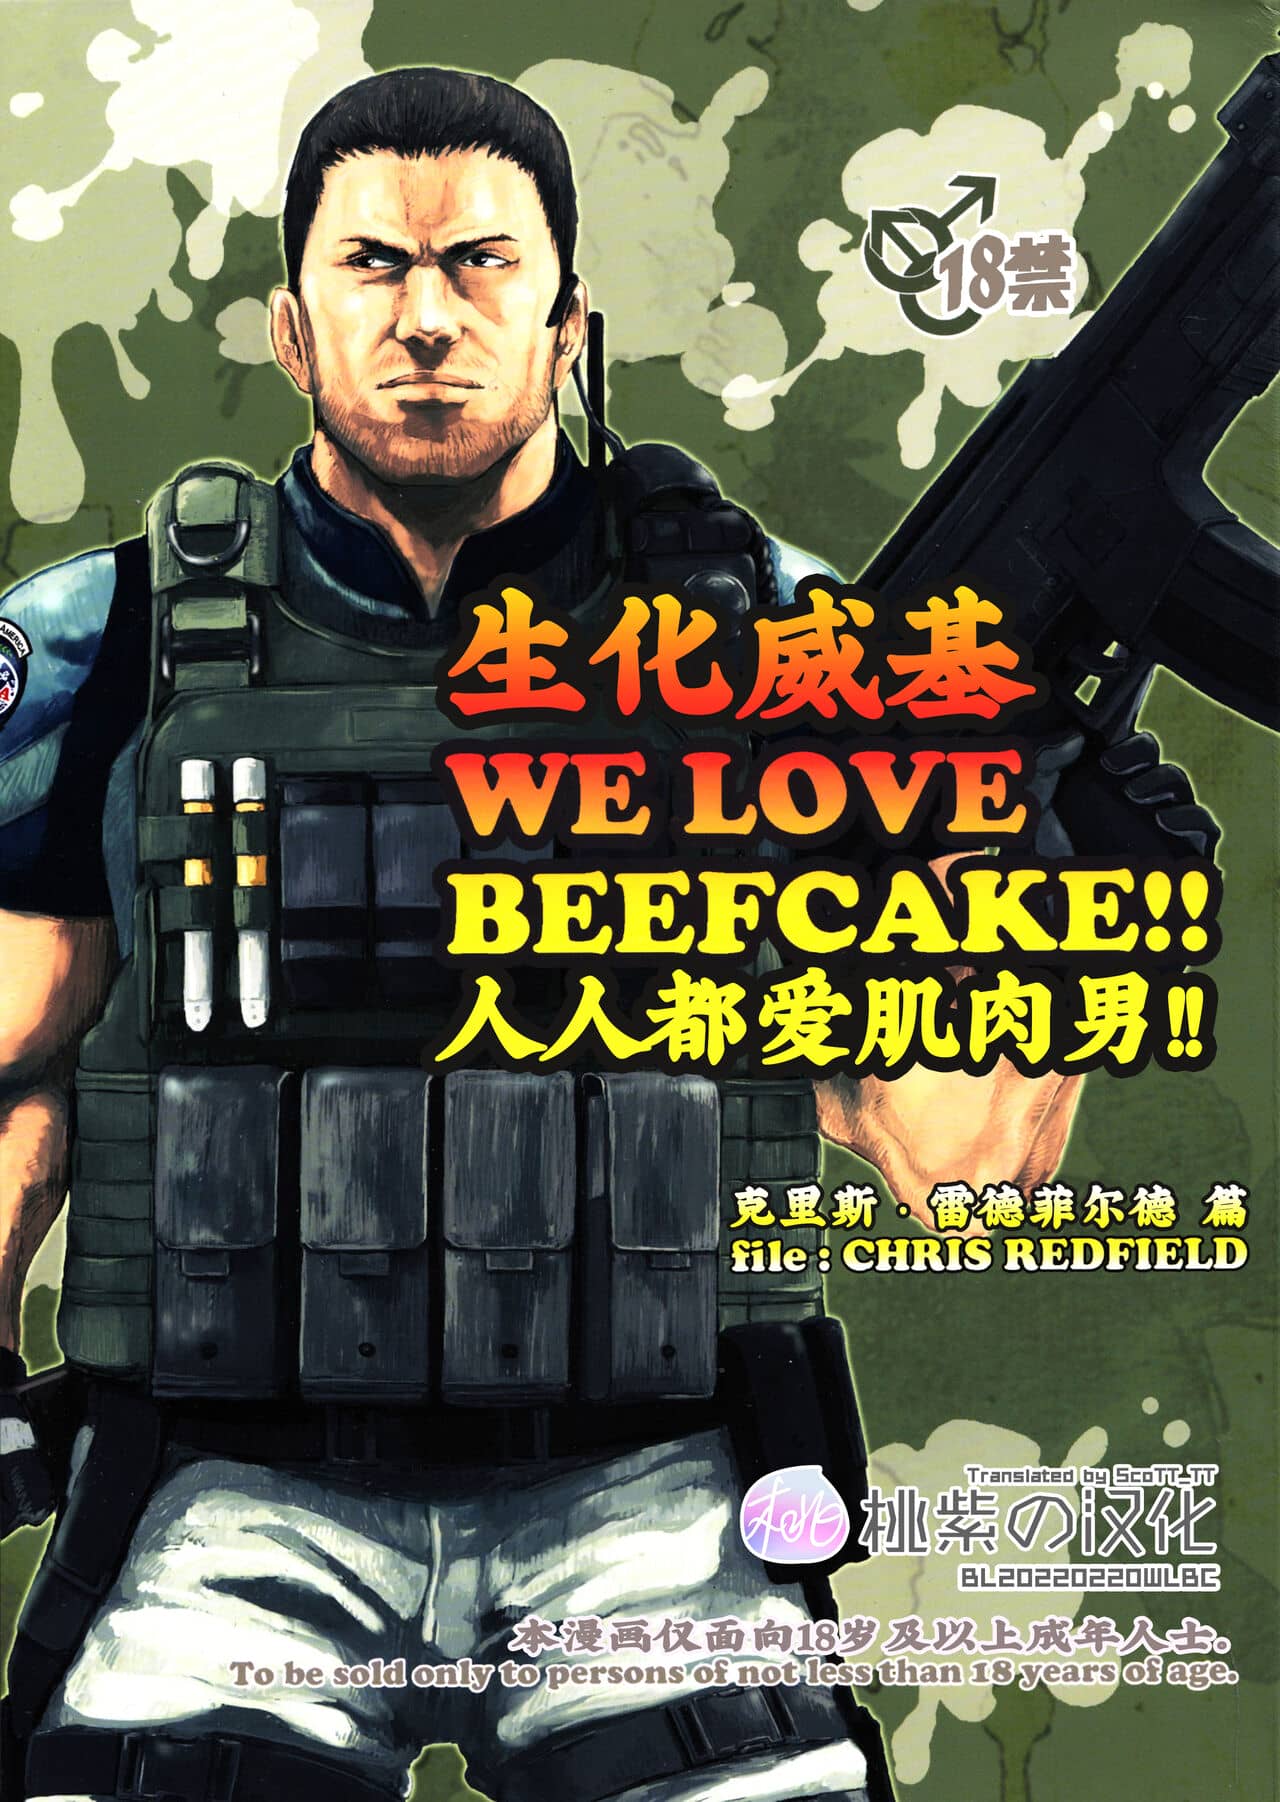 WE LOVE BEEFCAKE!! file:CHRIS REDFIELD (Resident Evil)｜人人都爱肌肉男!!克里斯篇(生化危机)